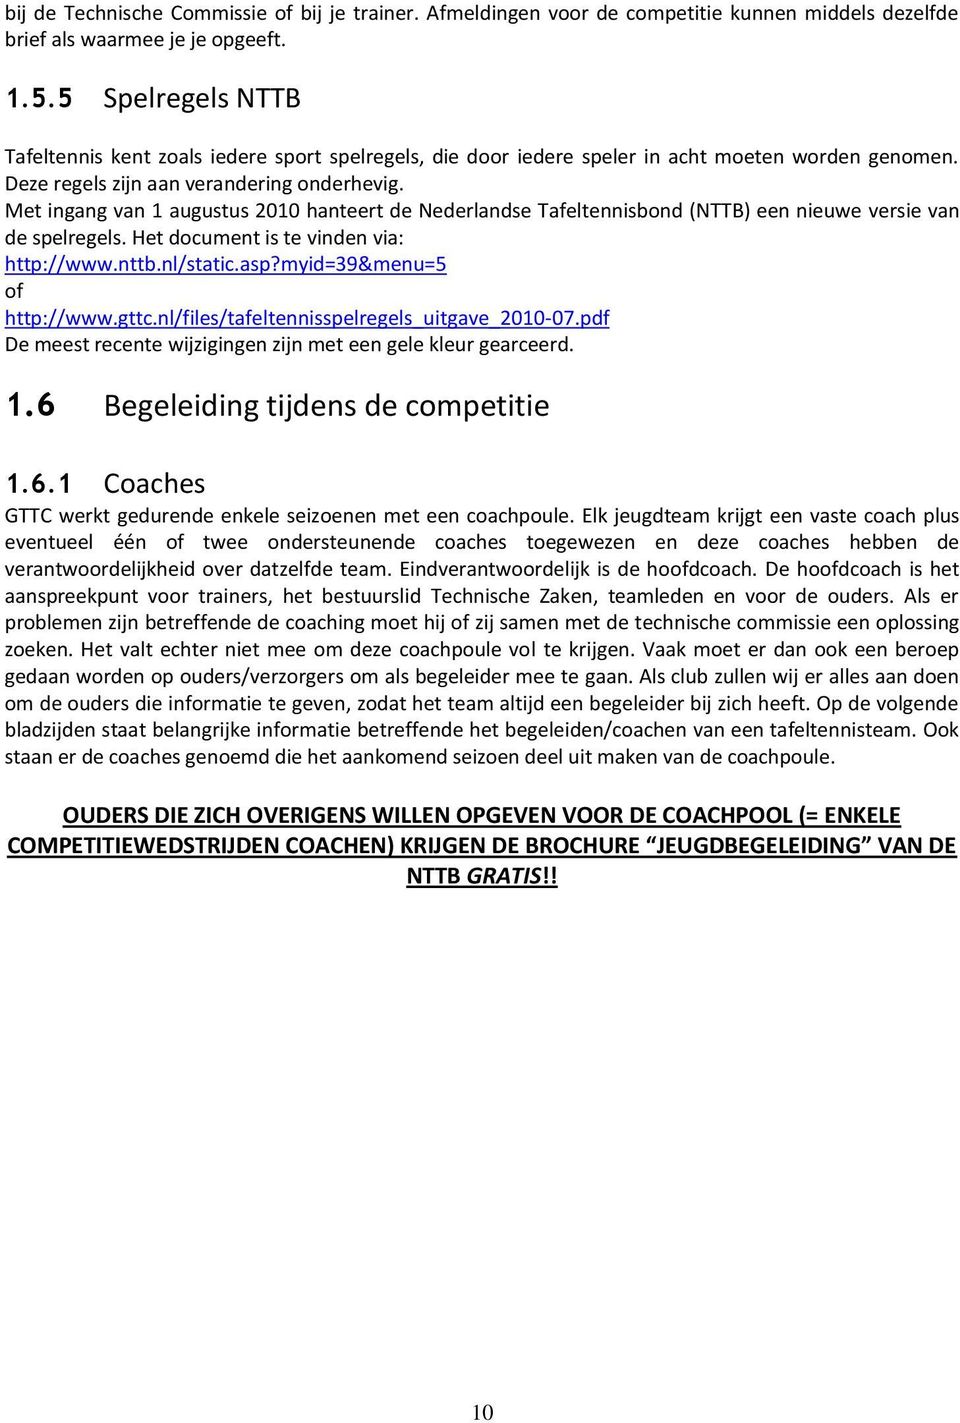 Met ingang van 1 augustus 2010 hanteert de Nederlandse Tafeltennisbond (NTTB) een nieuwe versie van de spelregels. Het document is te vinden via: http://www.nttb.nl/static.asp?